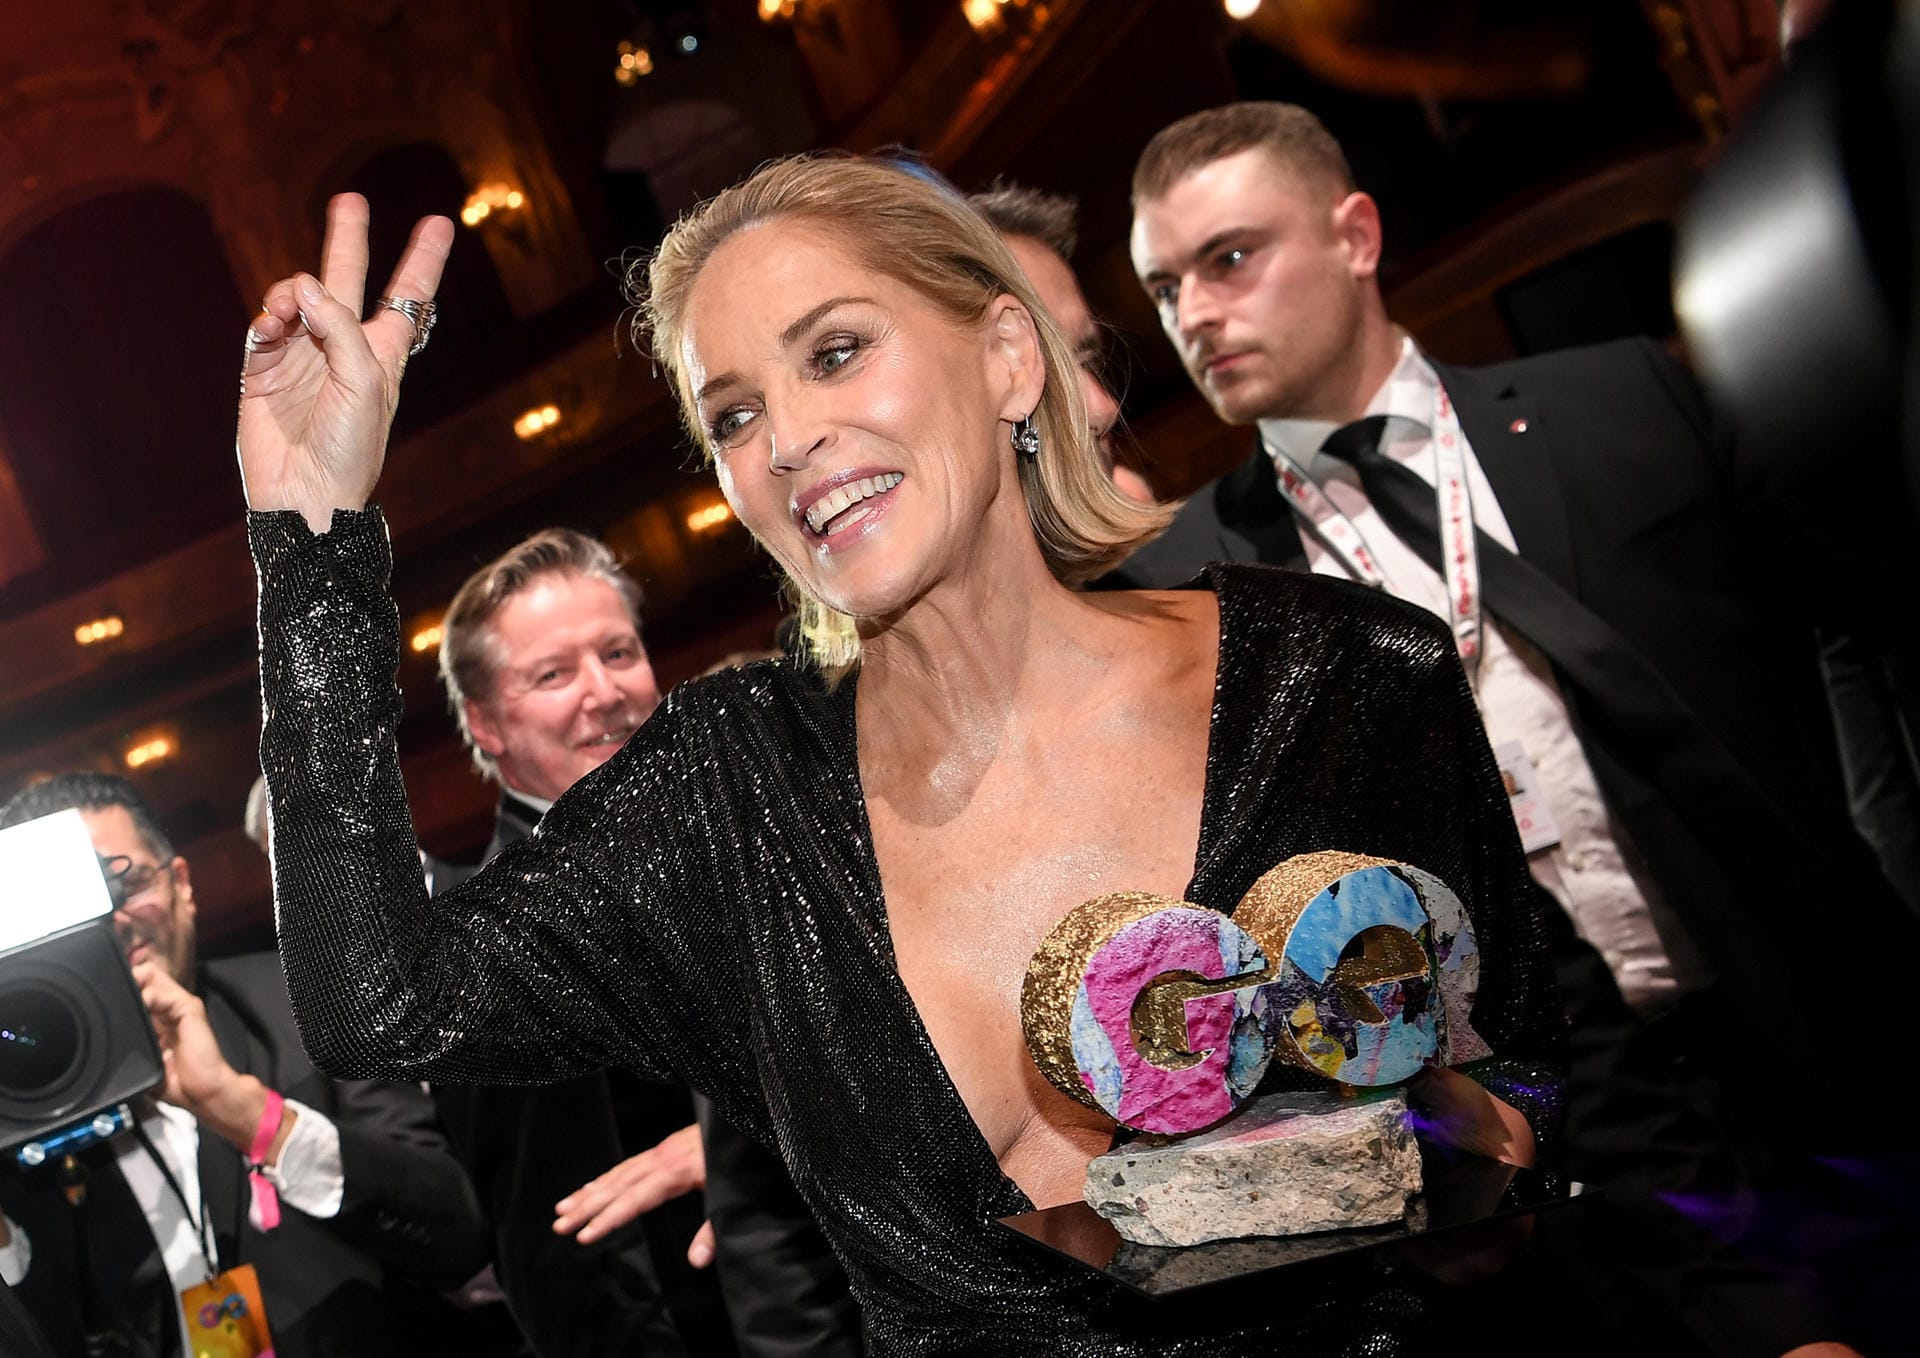 "GQ"-Awards: Sharon Stone zeigte sich im Glitzer-Look.